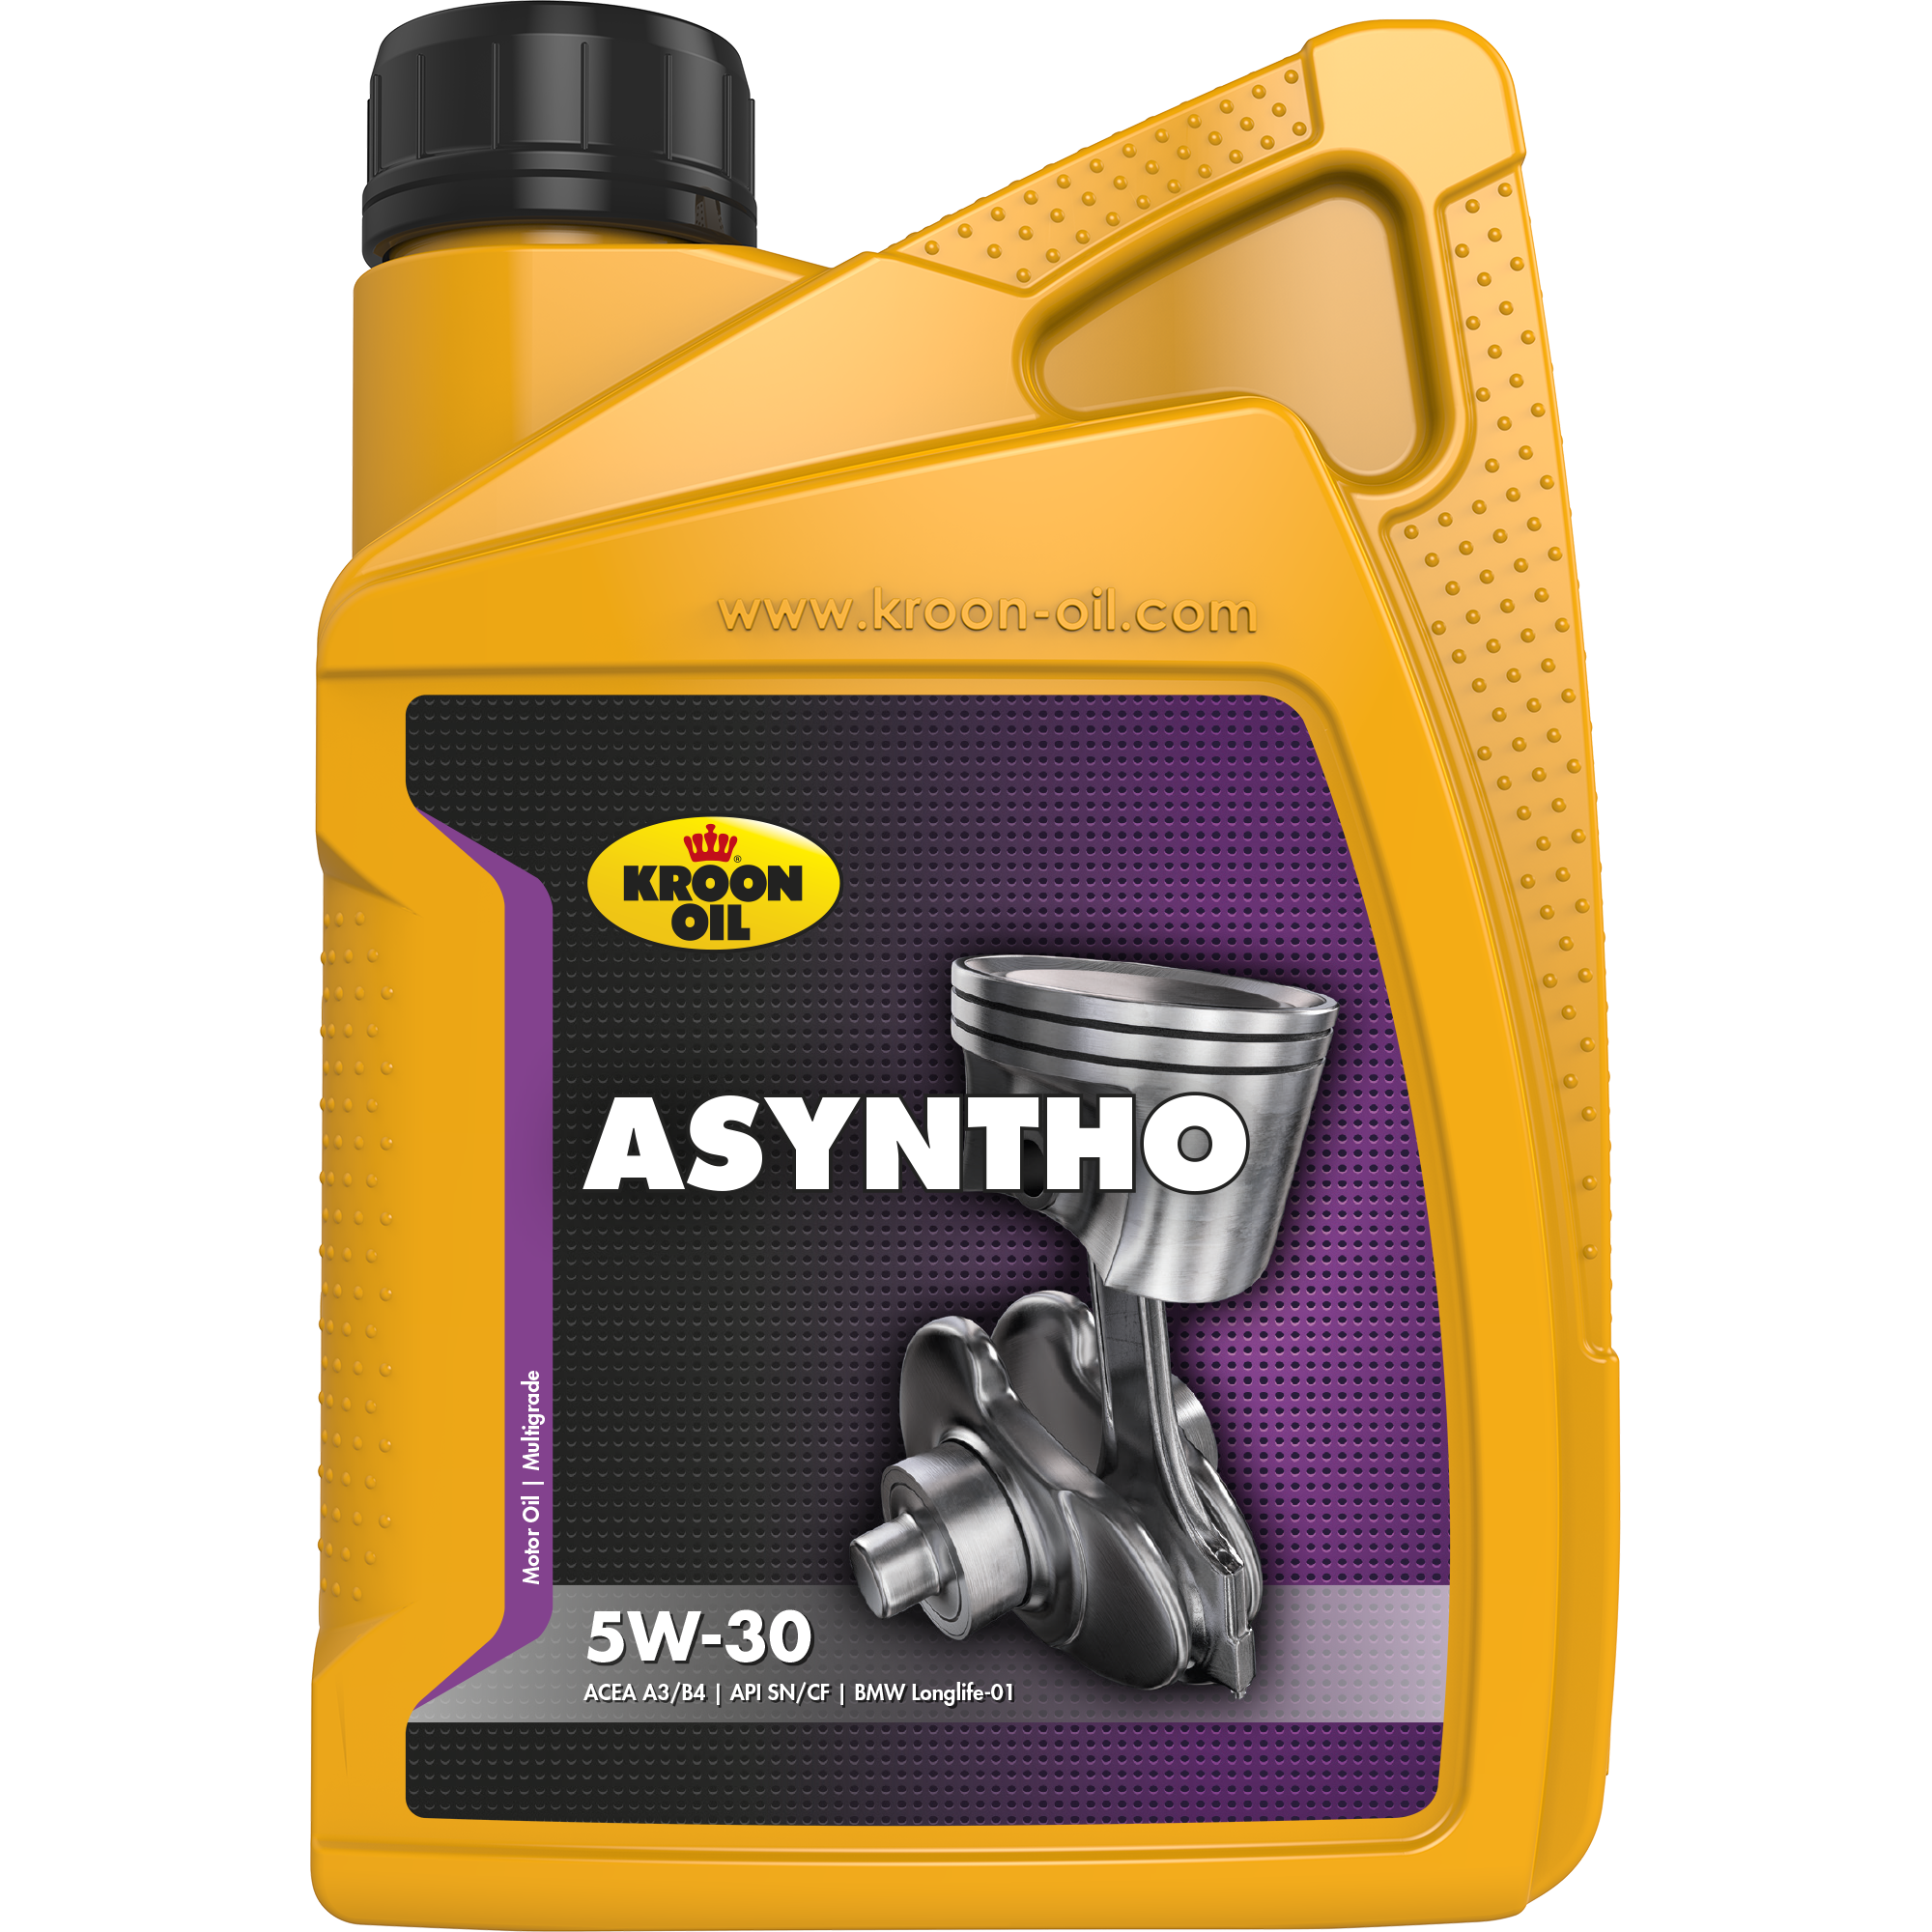 Kroon-Oil Asyntho 5W-30, 1 lt